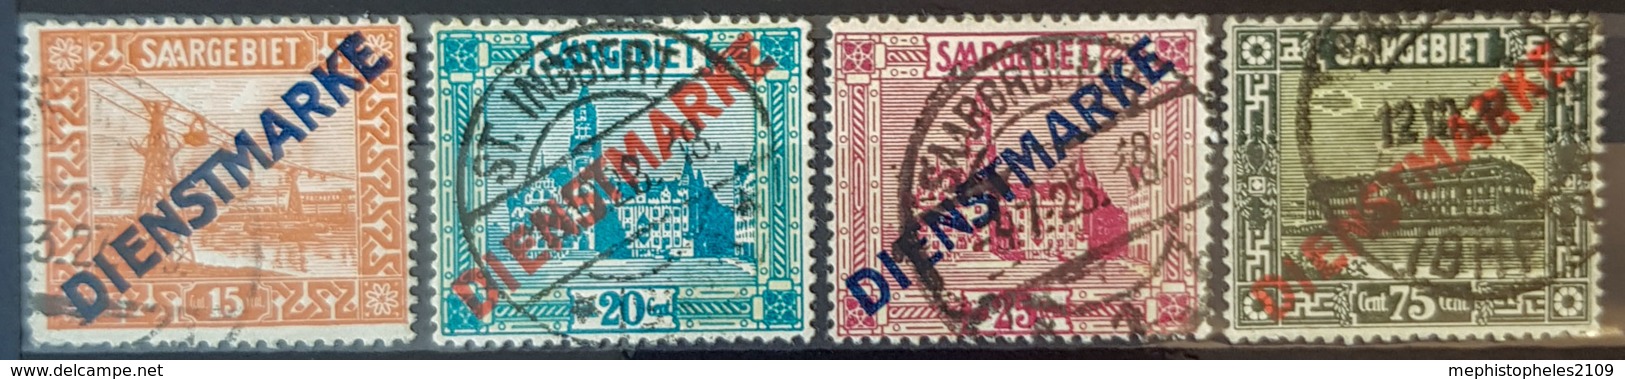 SARRE / SAARGEBIET 1923 - Canceled - Mi 12, 13, 14, 15 - Dienstmarken - Oficiales